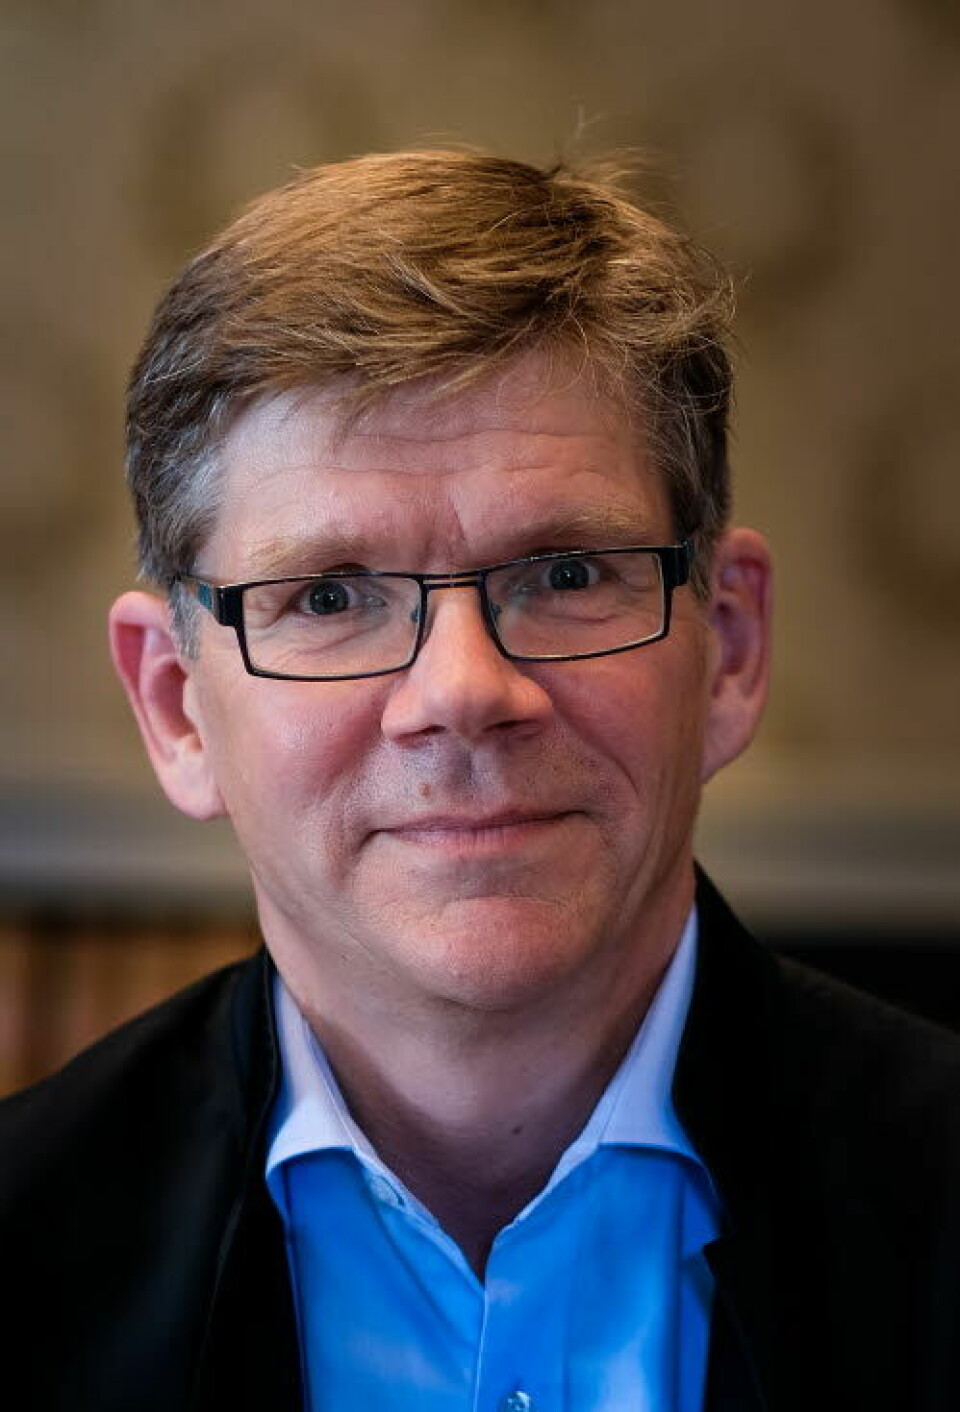 ROSER DATA-TILTAK: Svein Stølen, rektor ved Universitetet i Oslo.

            
                Foto: UiO